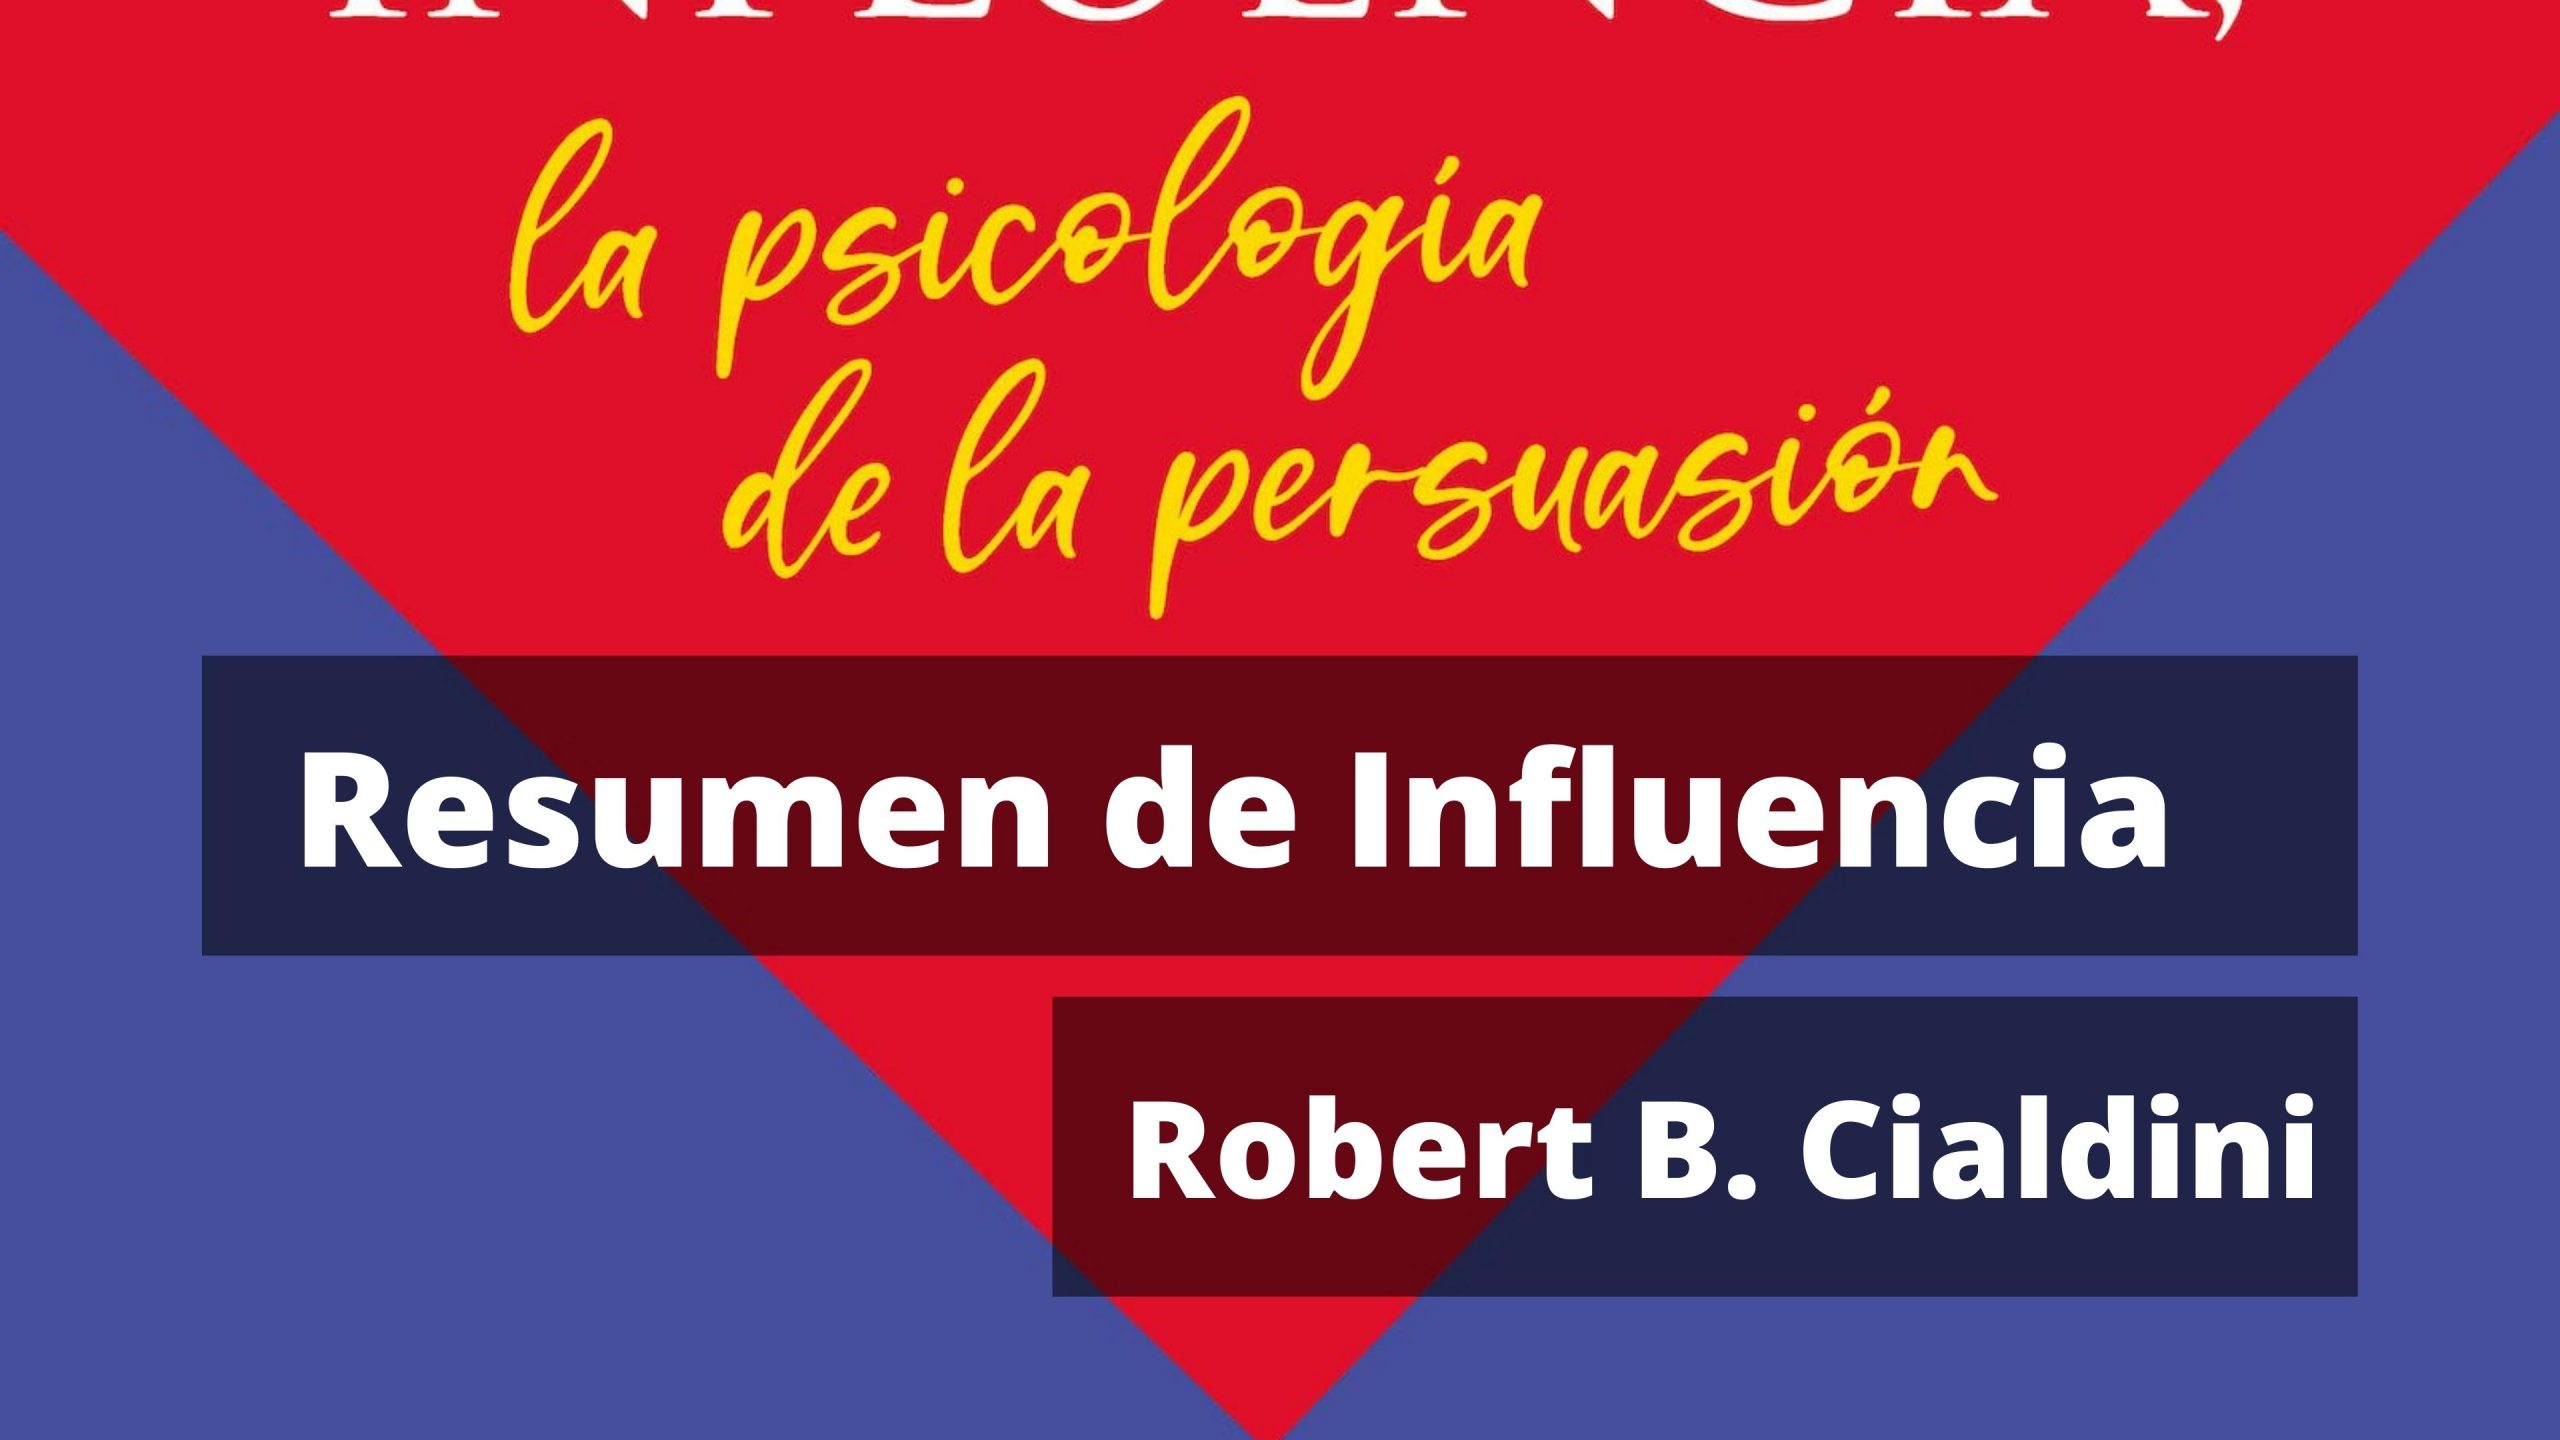 Resumen de Influencia, psicología de la persuasión de Robert Cialdini